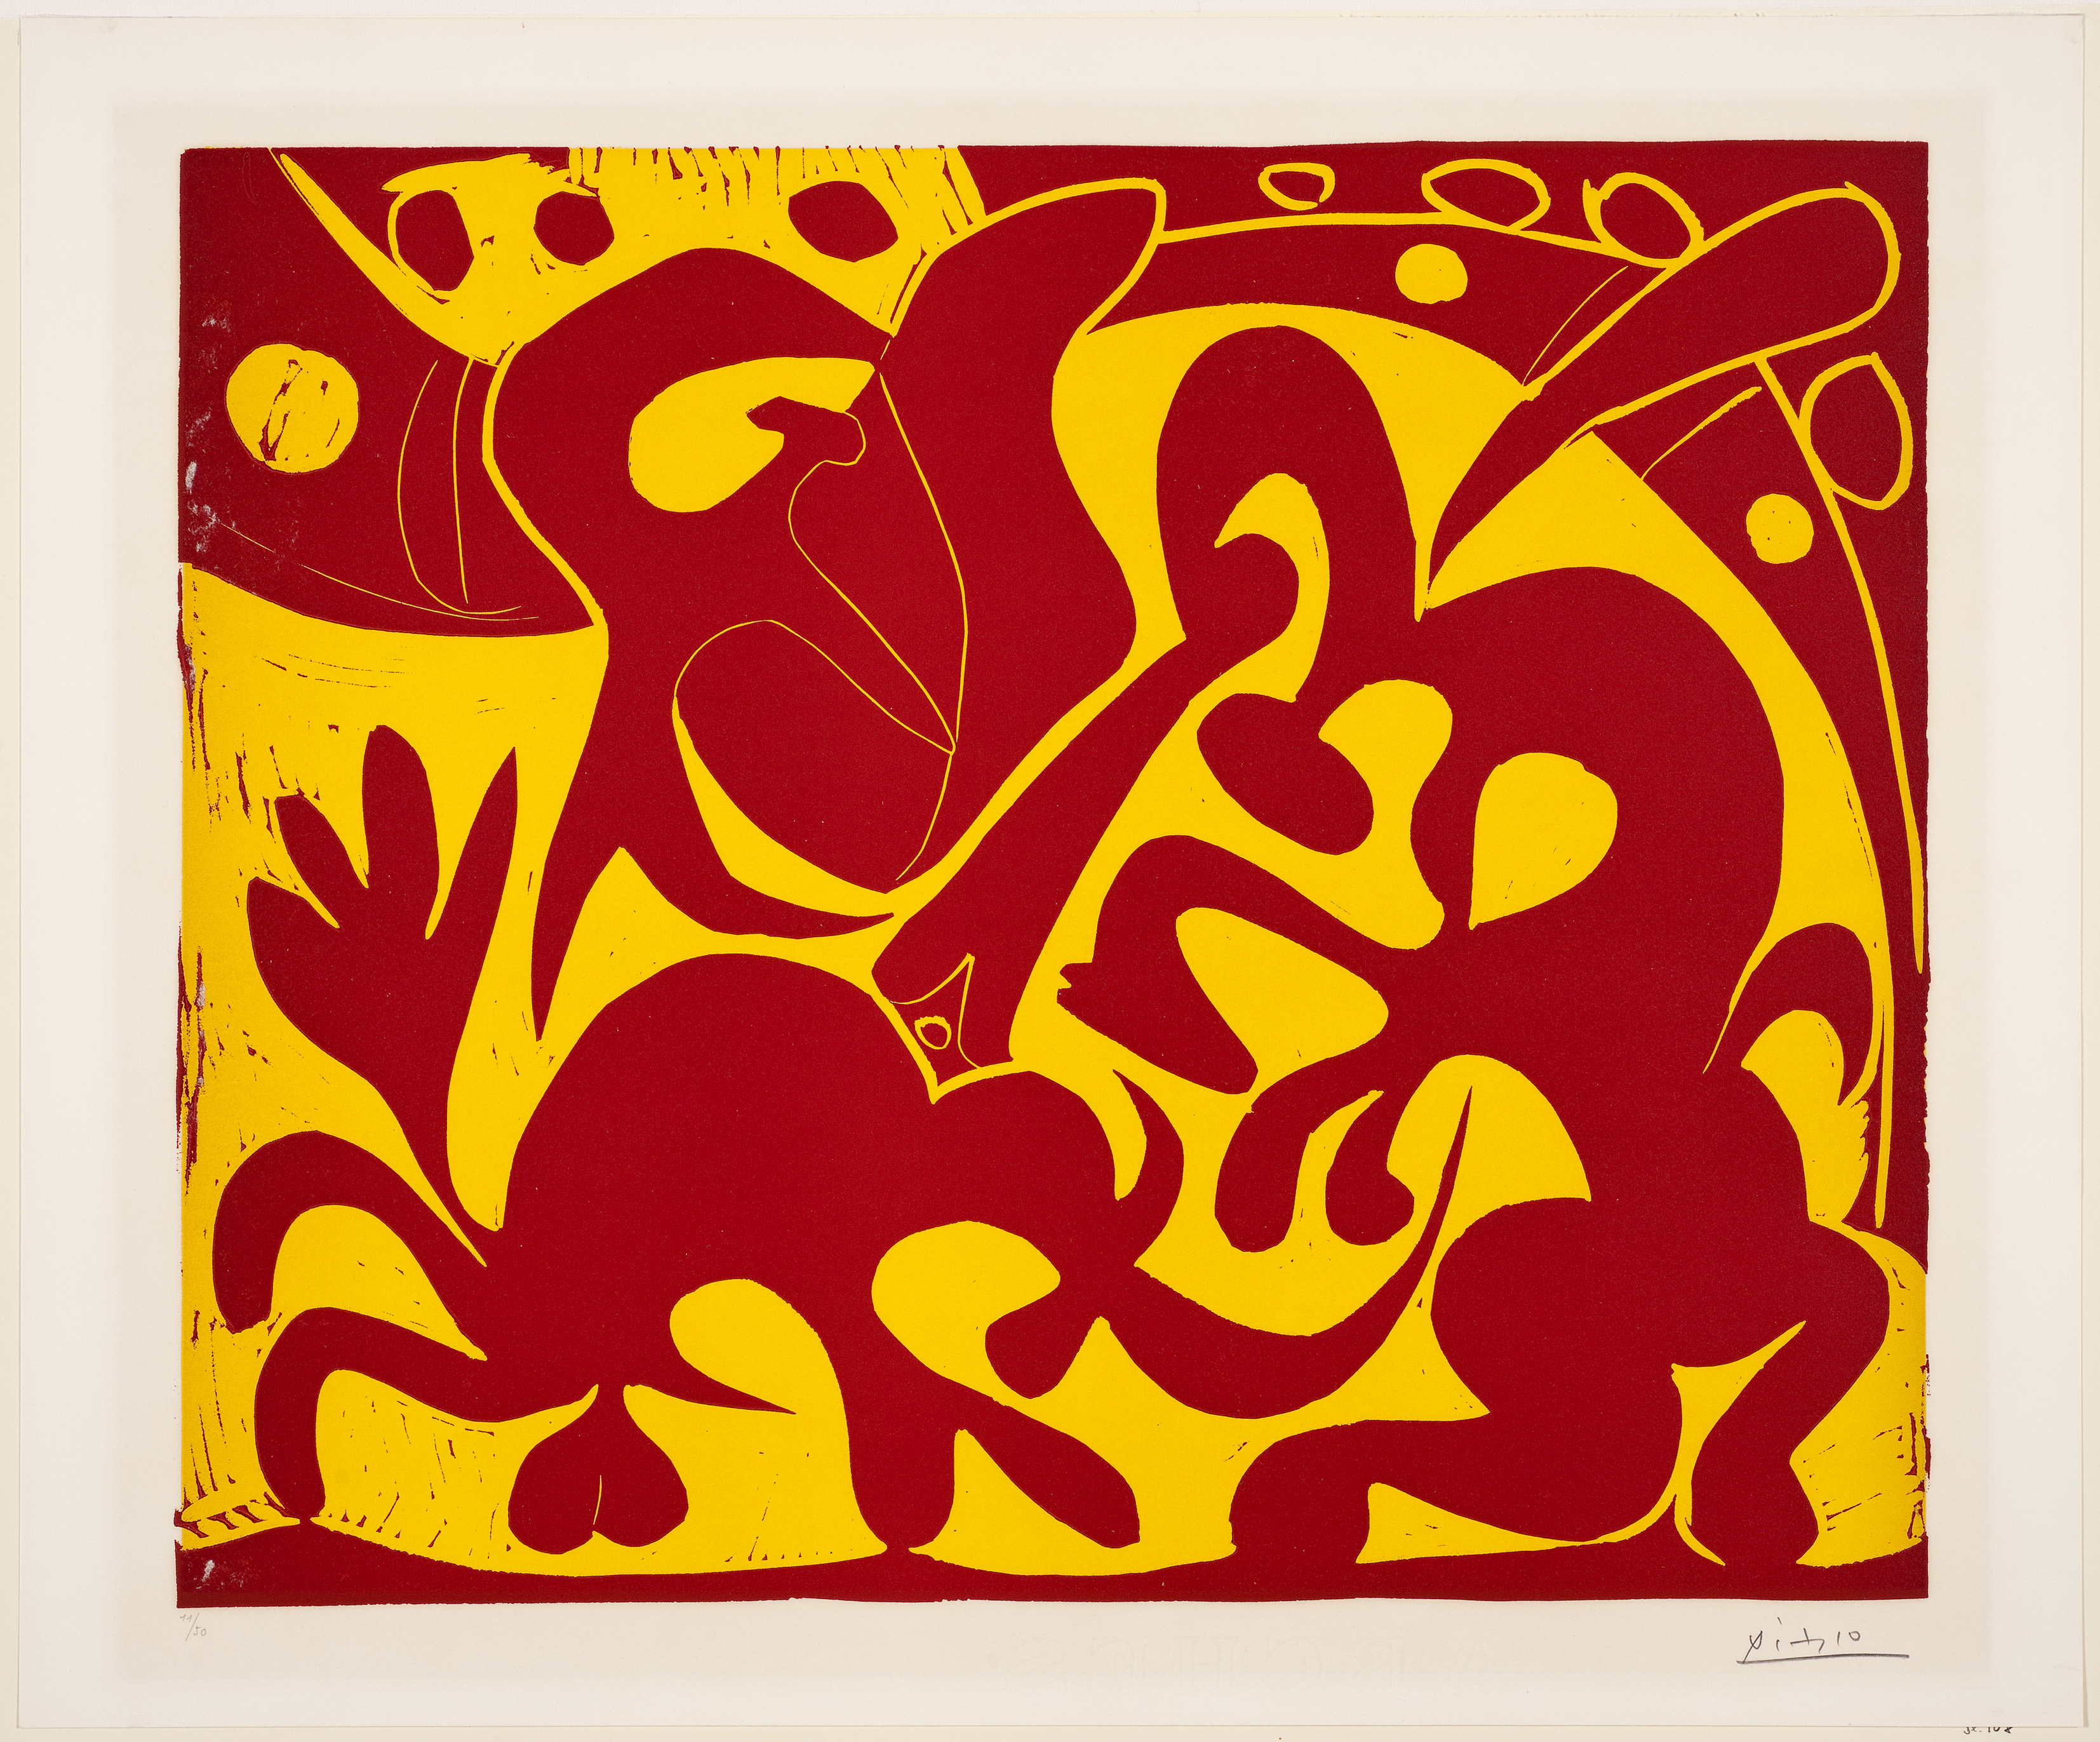 Pablo Picasso: Pique (rouge et jaune), Vallauris, Frühjahr 1959. Pika (rot und gelb). Farblinolschnitt, 53,1 x 63,7 cm. Sprengel Museum Hannover, Schenkung Sammlung Sprengel (1969). Foto: Michael Herling/Aline Gwose, Sprengel Museum Hannover. © VG Bild-Kunst, Bonn 2017 